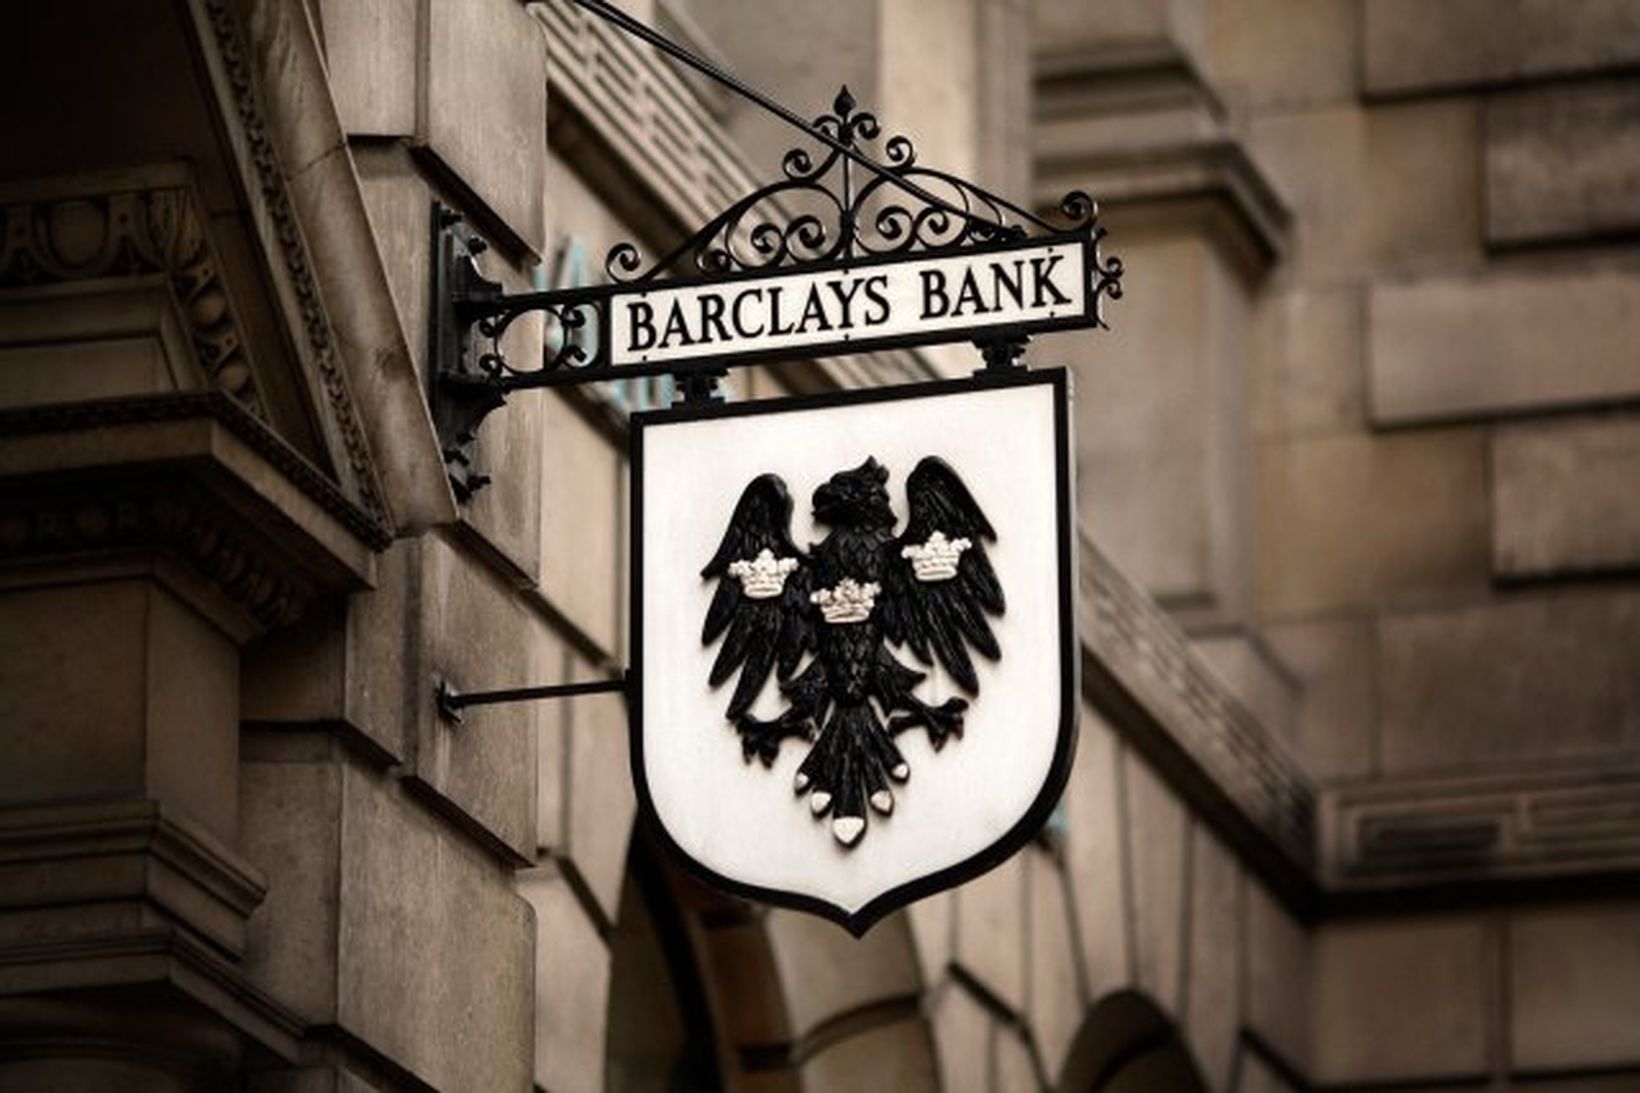 Barclays hefur hingað til verið miðja Libor málsins. RBS virðist …